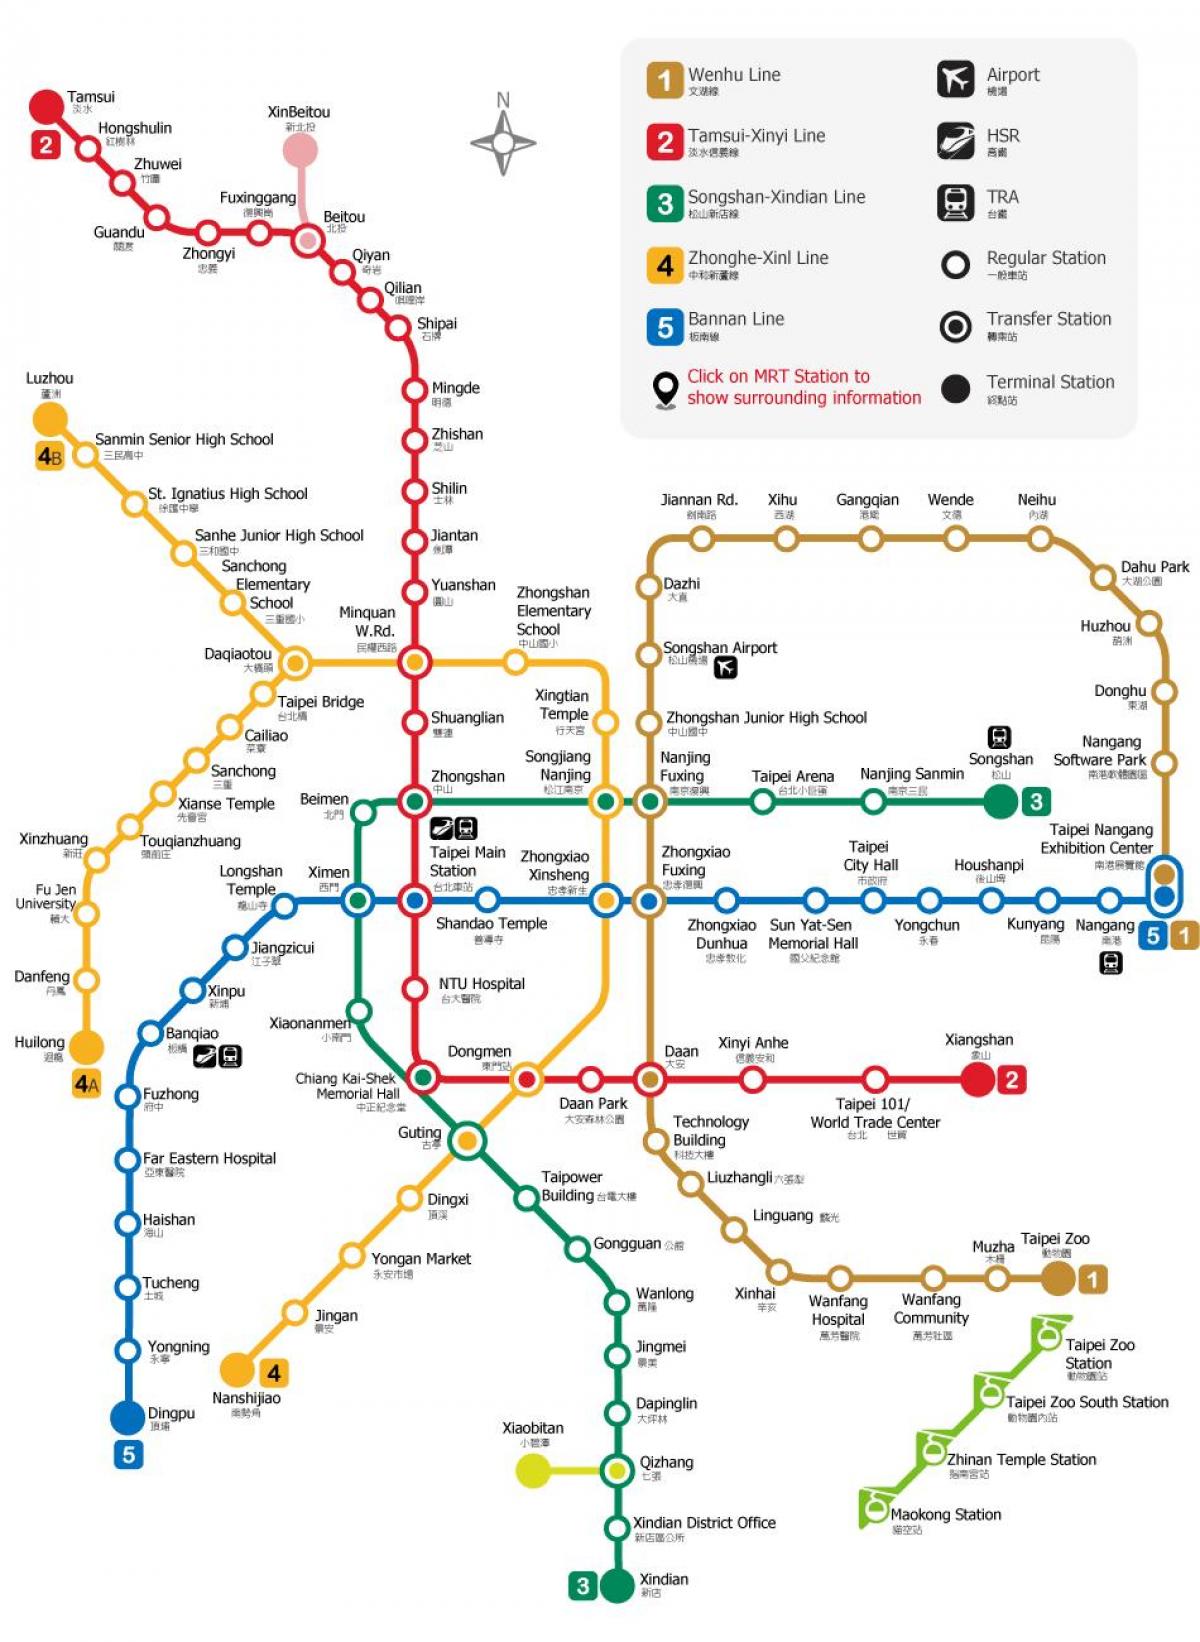 Taipei railway station χάρτης